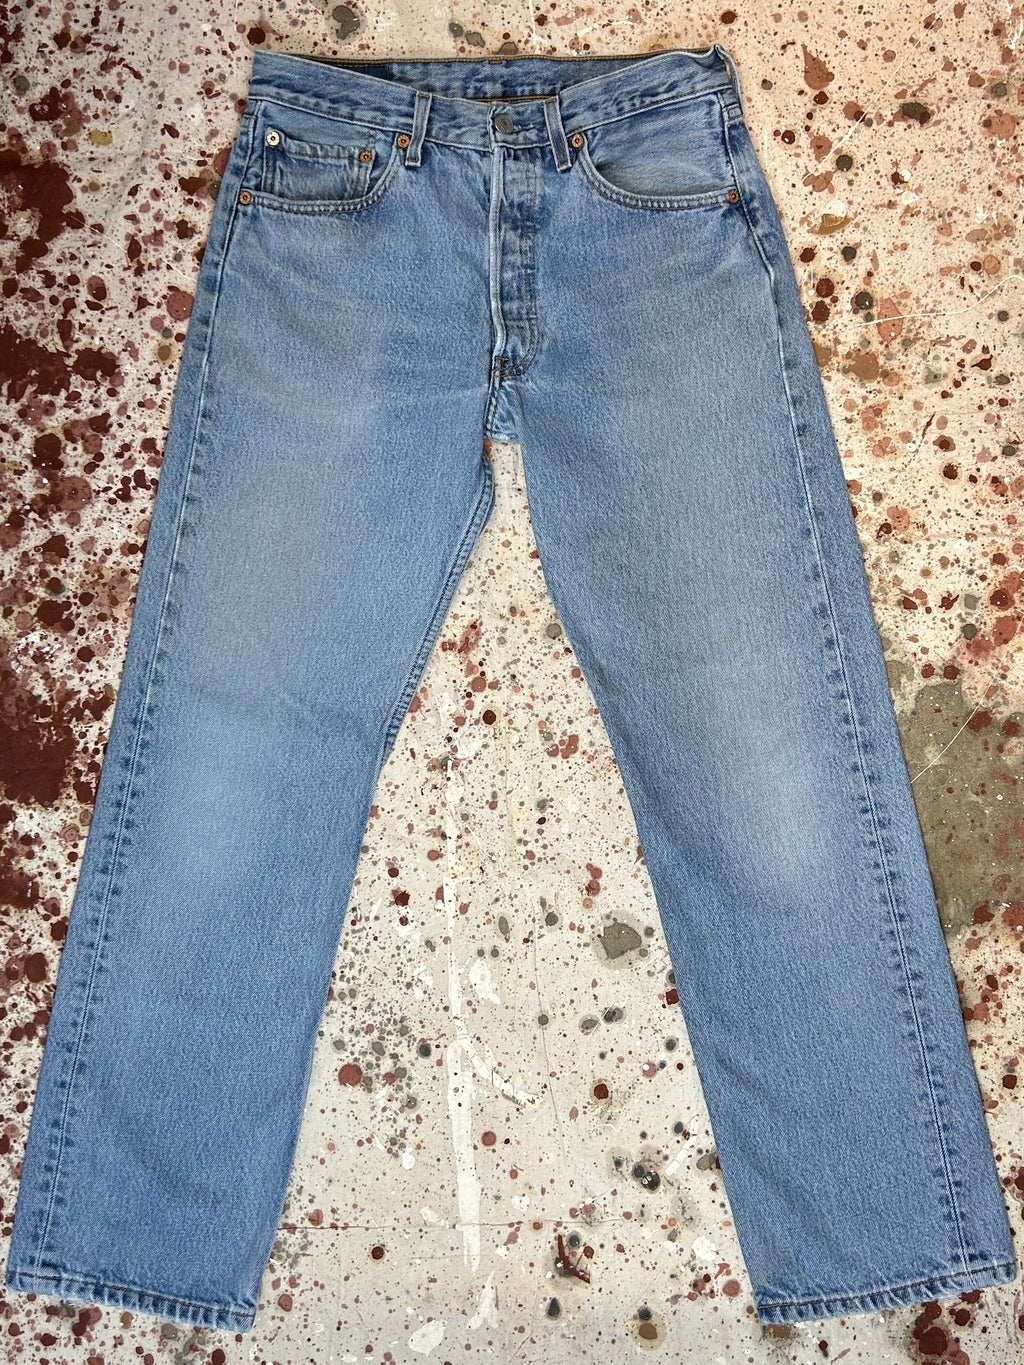 Vintage Levi's 501 Light Wash Denim Jeans (JYJ0424-182)